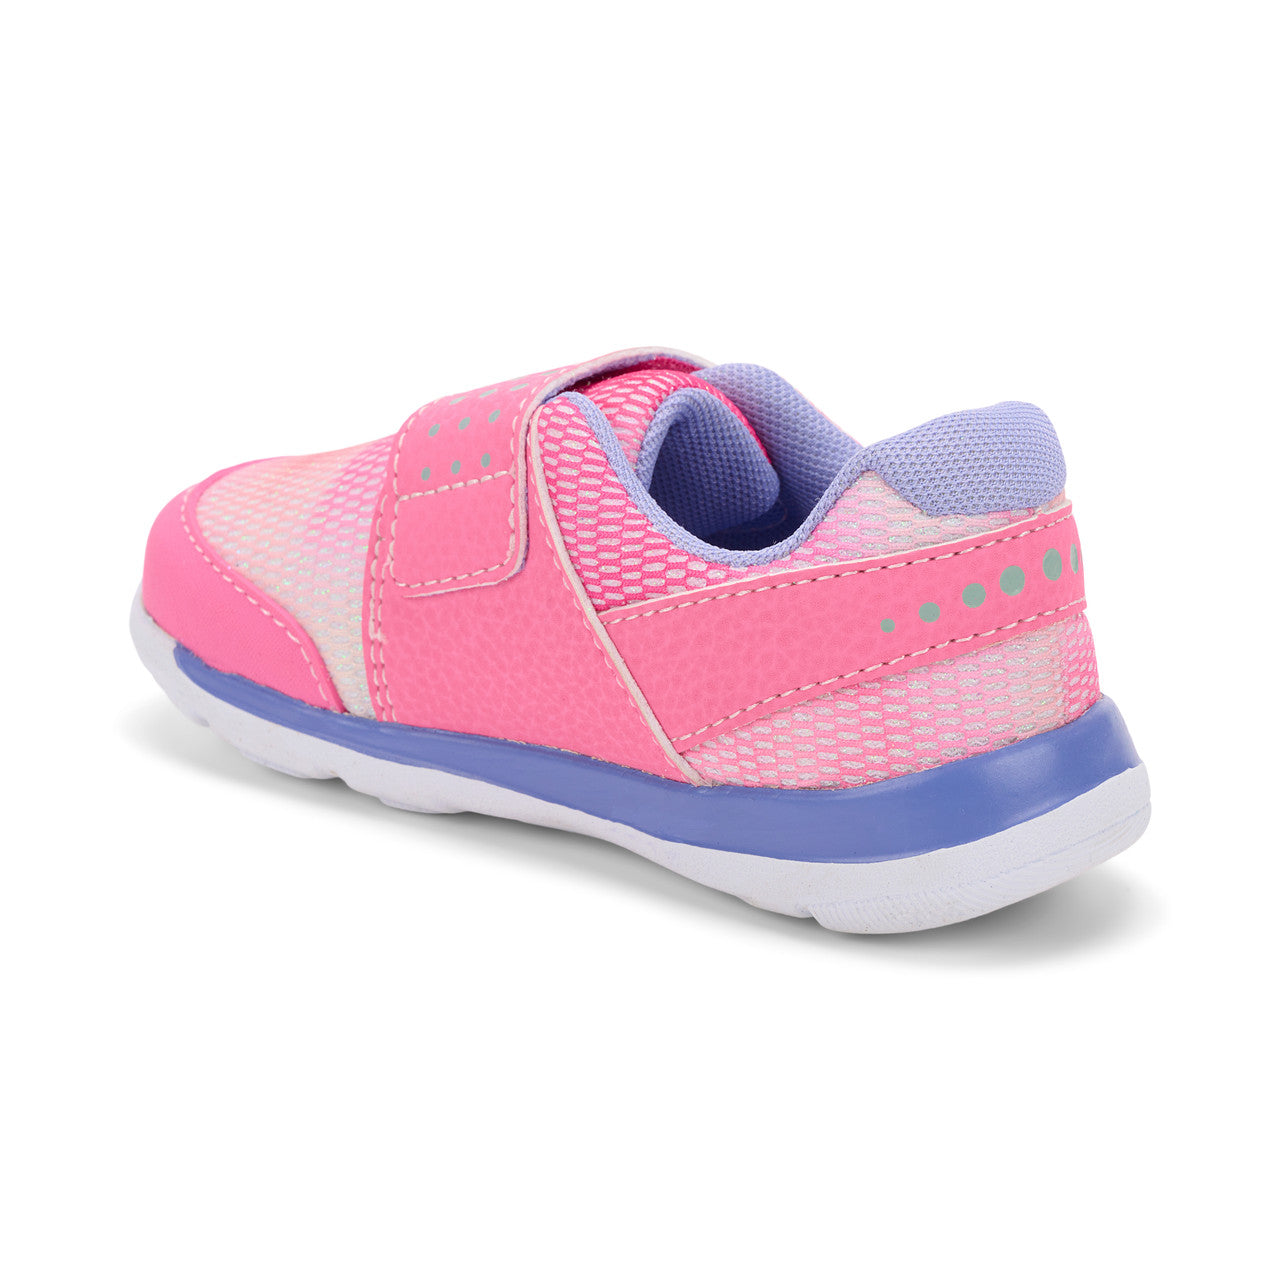 Ryder Sneaker - Hot Pink Glitter